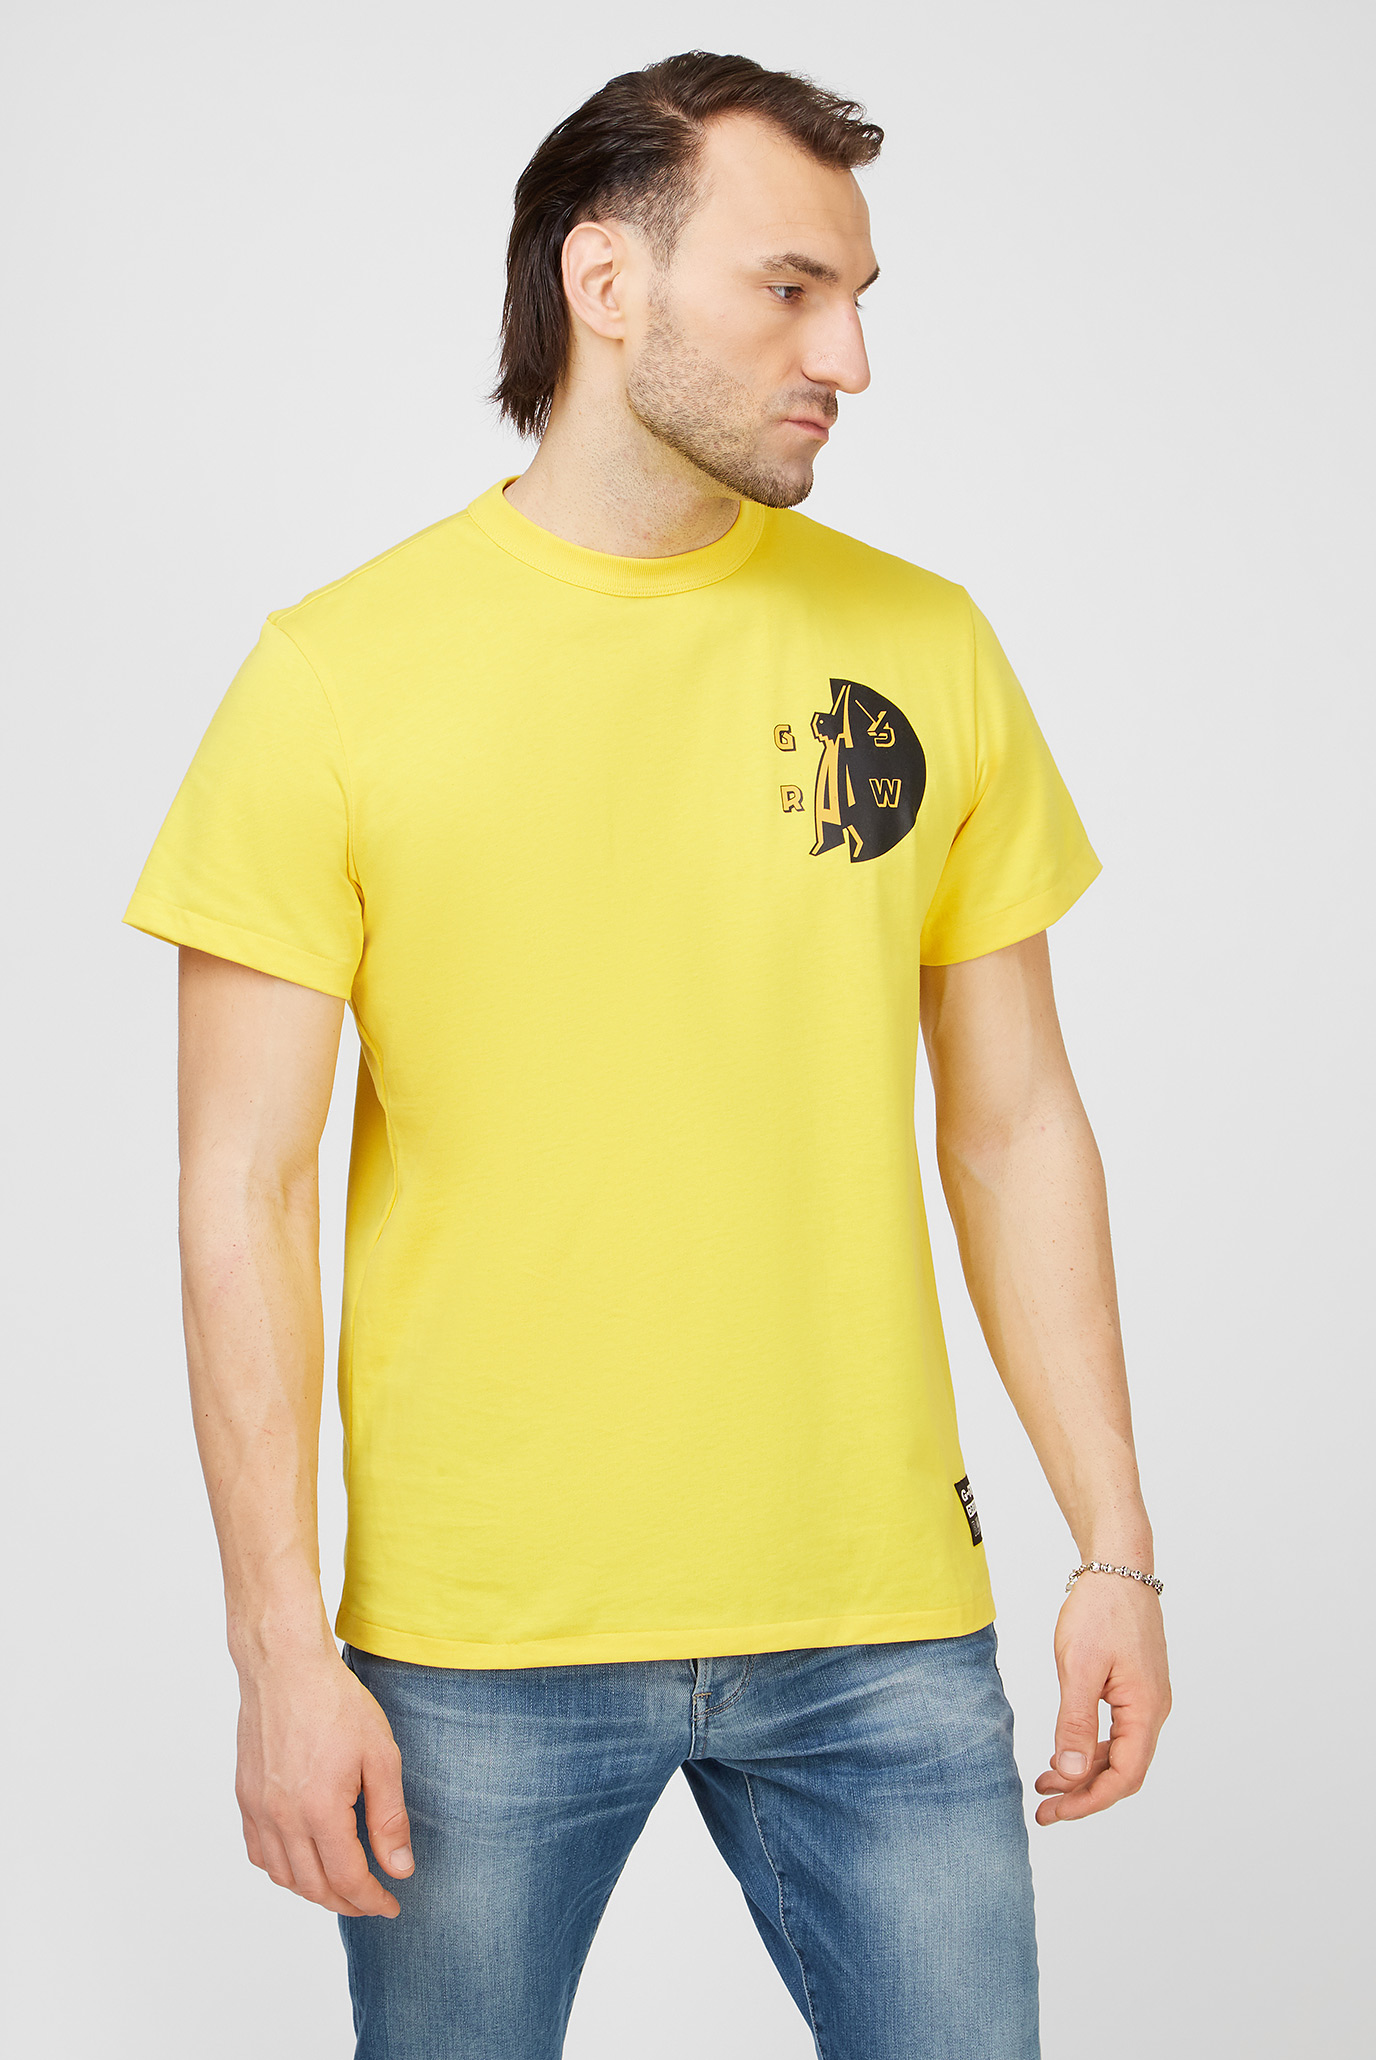 Мужская желтая футболка Gs raw hammer r t s\s 1